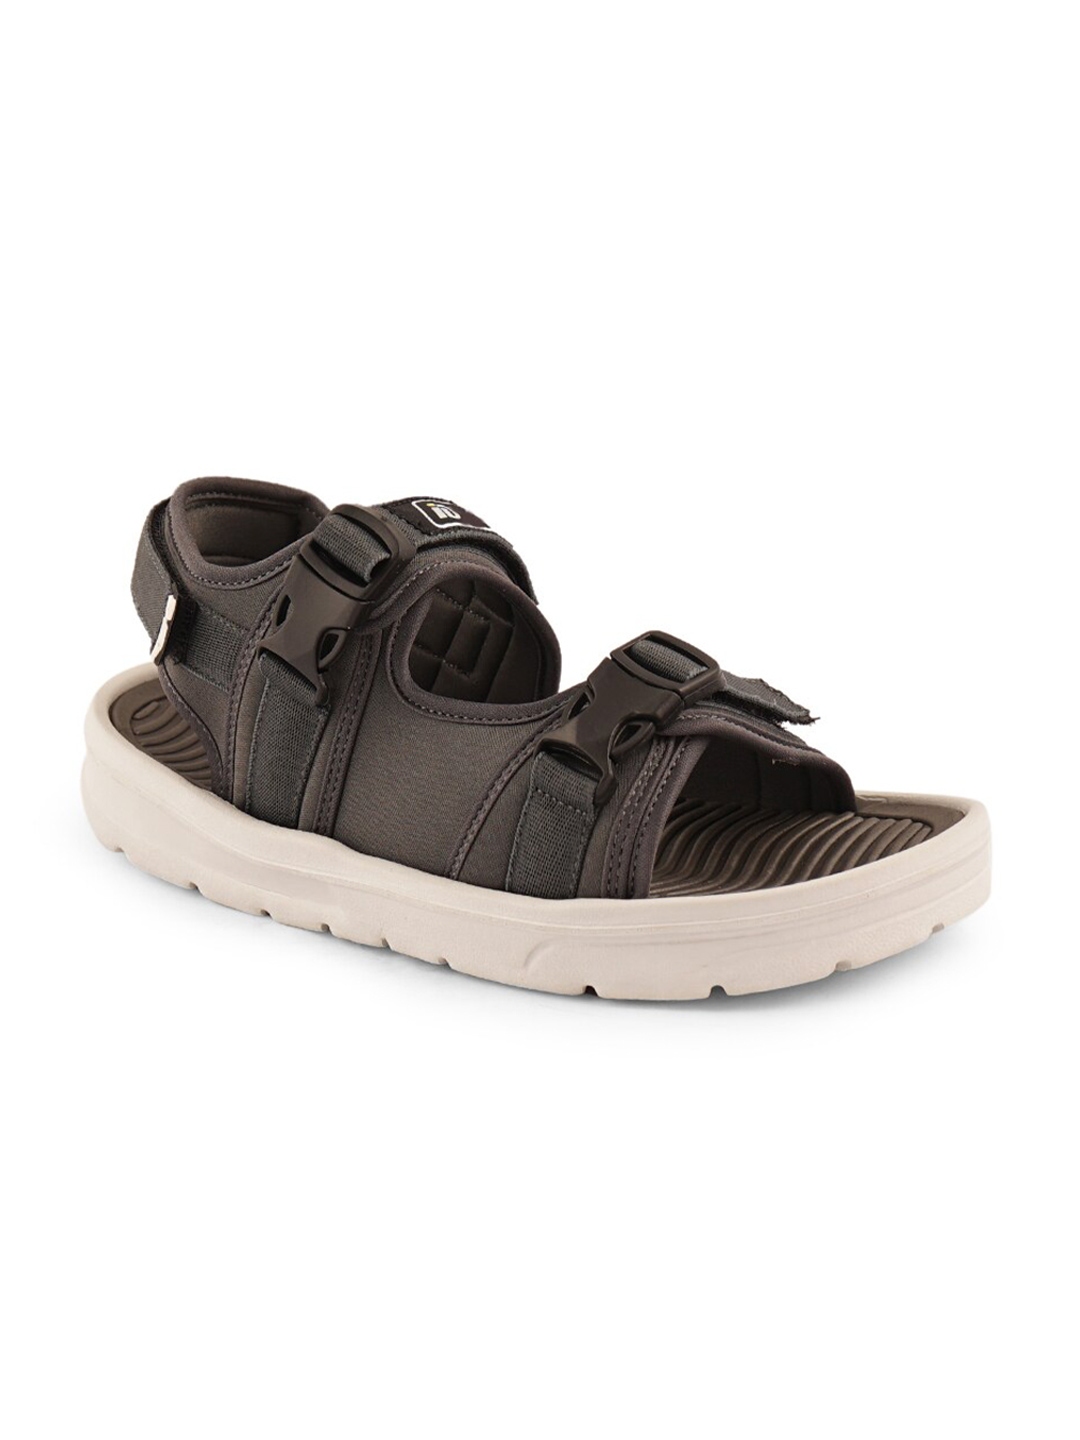 Buy ID Men Grey Comfort Sandals - Sandals for Men 14339878 | Myntra